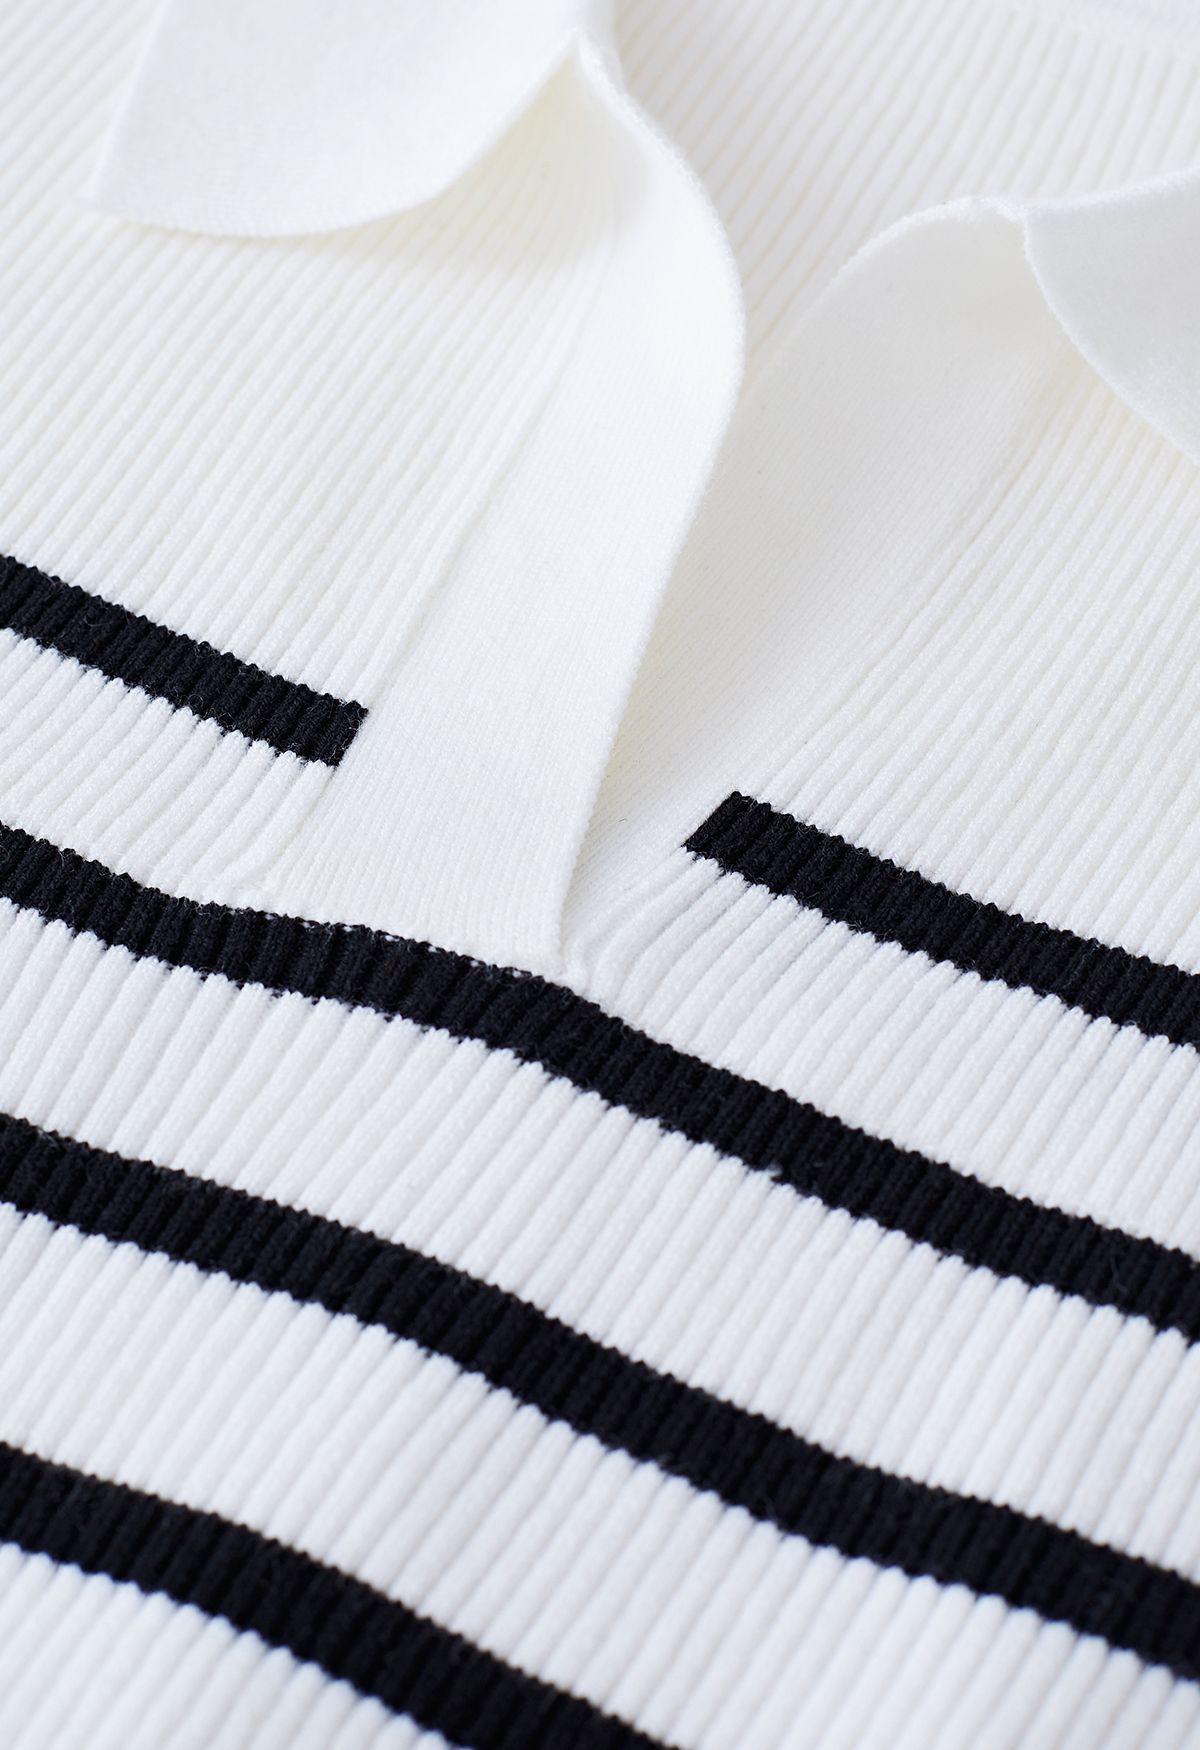 Stripe Knit Spliced Hi-Lo Shirt in White